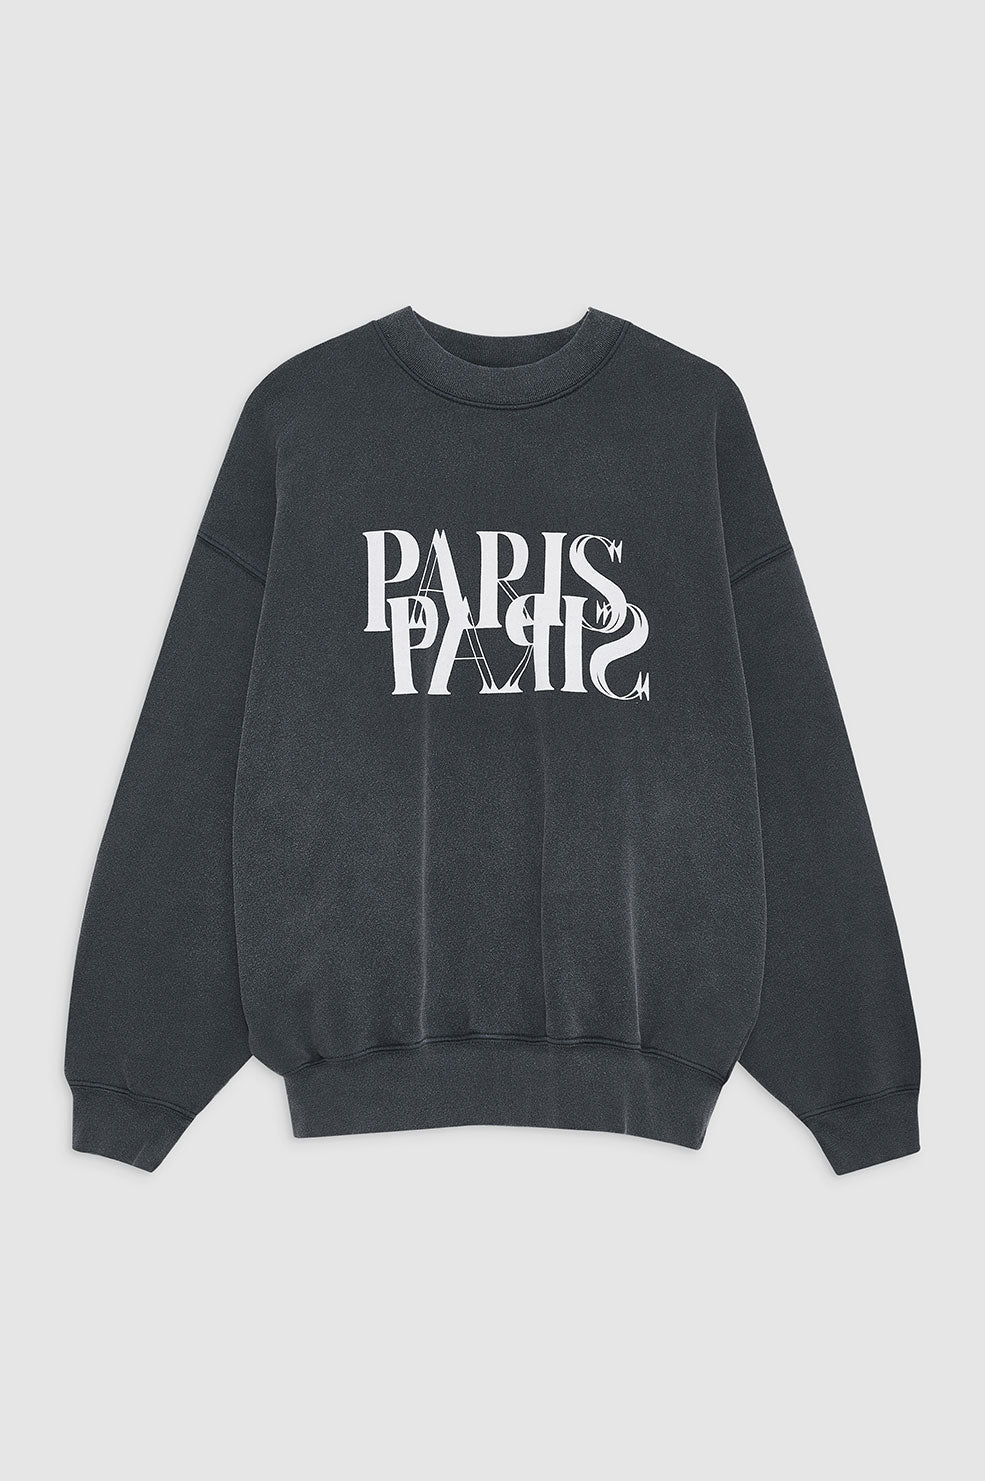 ANINE BING Jaci Sweatshirt Paris - Washed Black - Front View